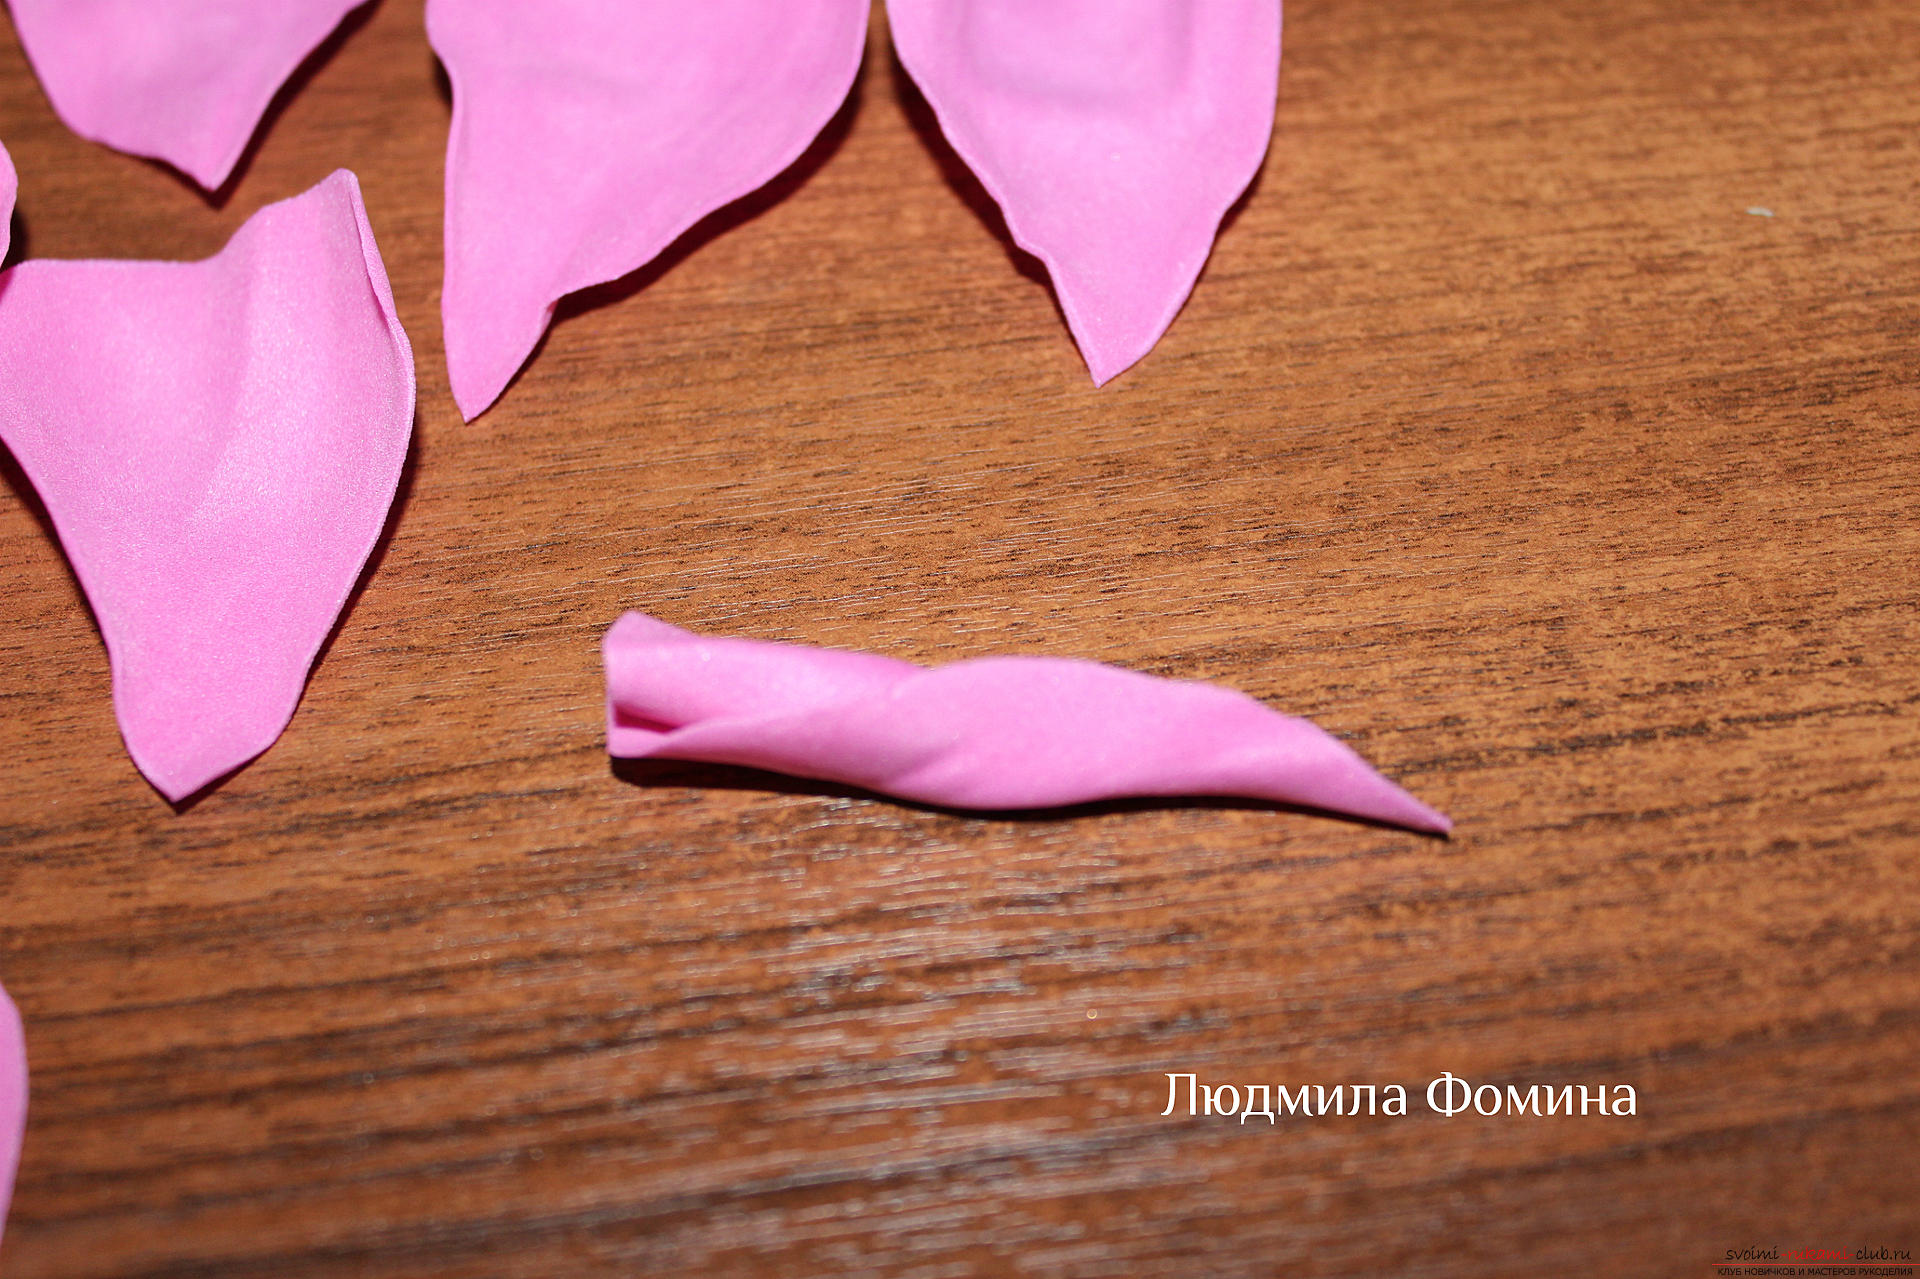 Мастер-класс по созданию цветов научит делать своими руками розу из фоамирана или из кожи. Фото №6